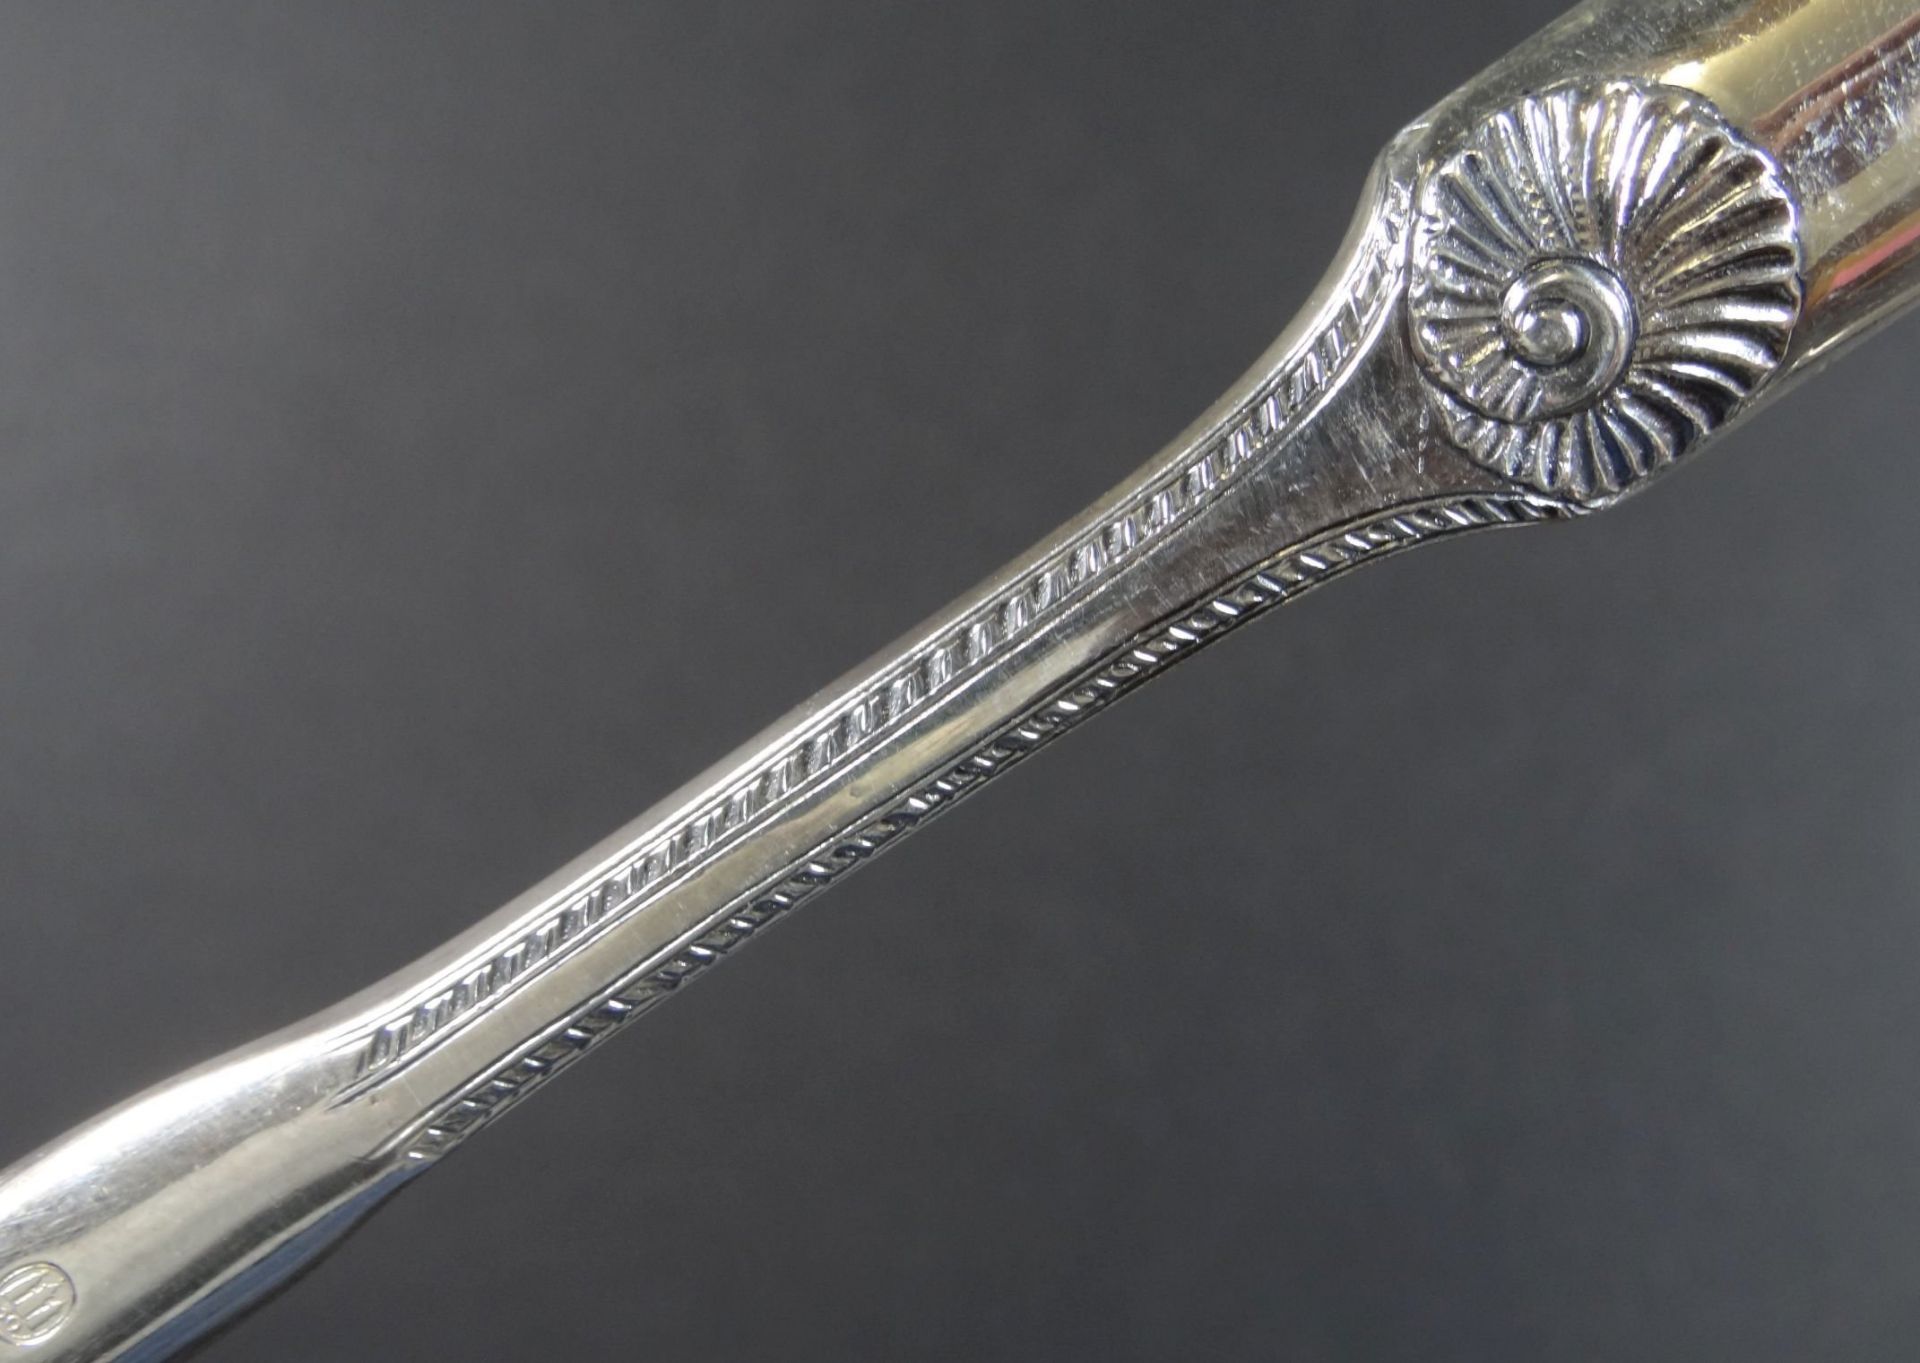 Silber Beinschaber oder ähnliches, Copenhagen, L-20 cm, Muscheldekor, 40 gr< - Bild 4 aus 5